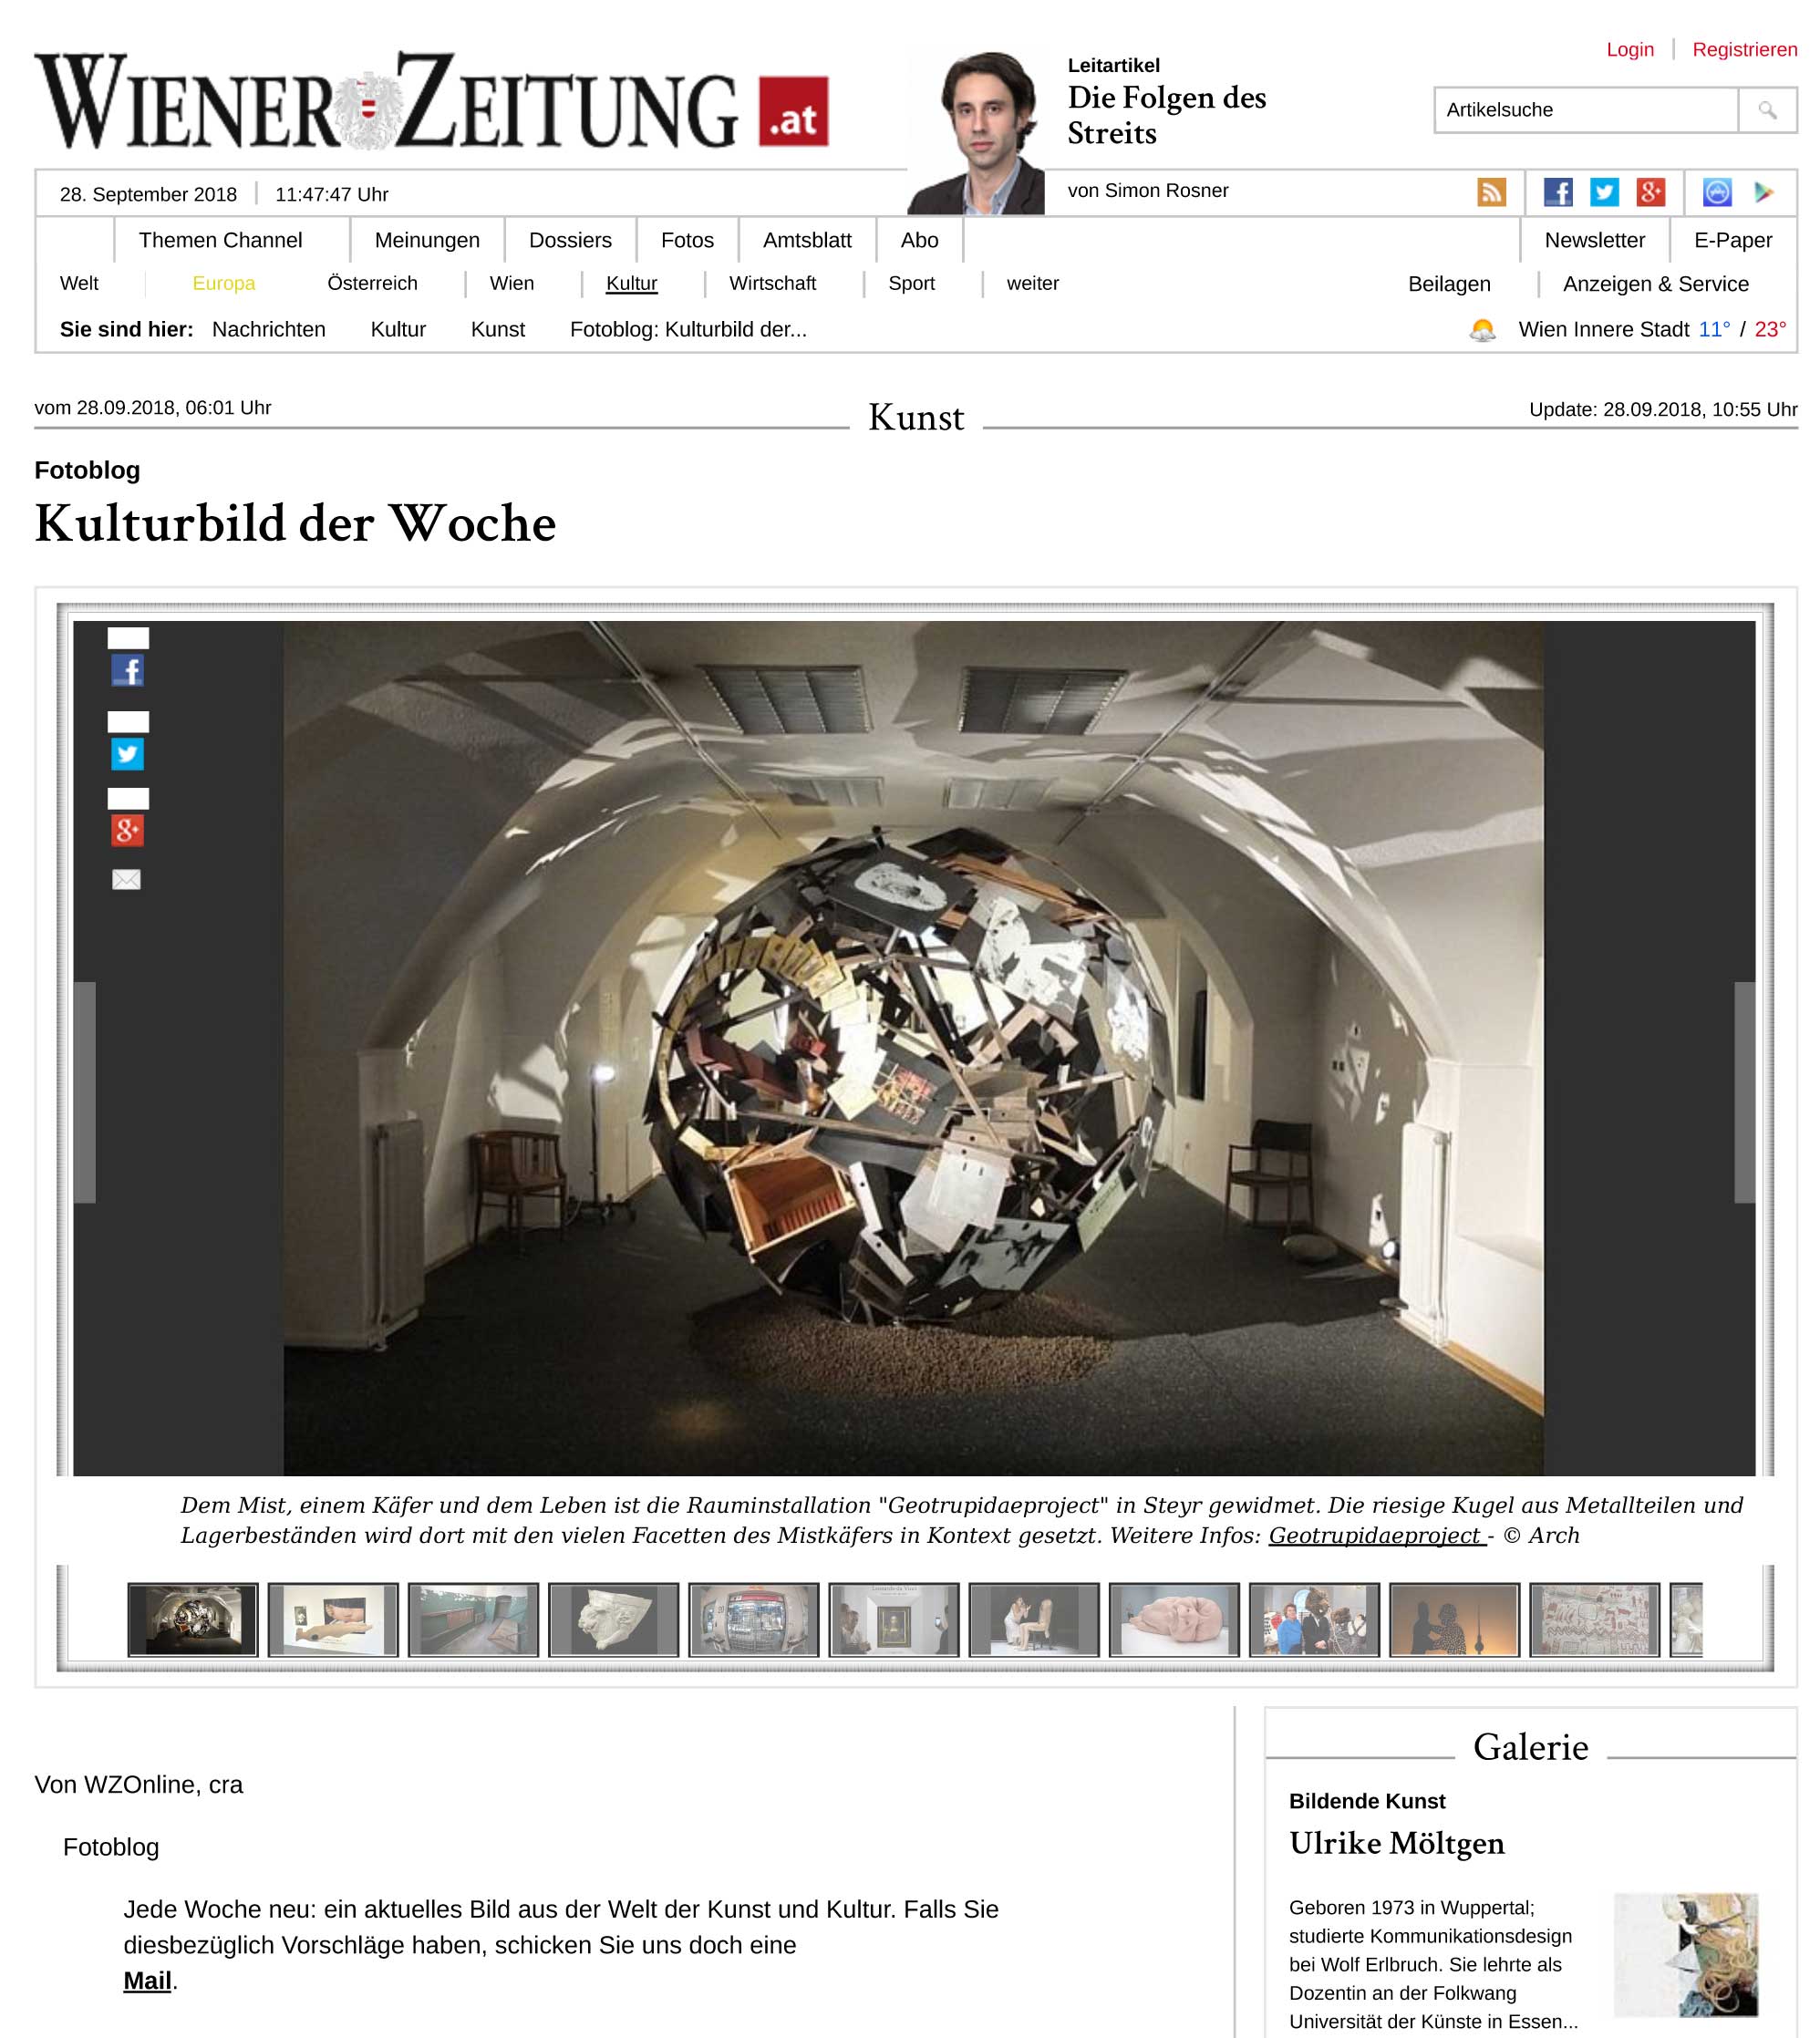 Wiener Zeitung - Steyr Grünmarkt 14 - Kulturbild der Woche